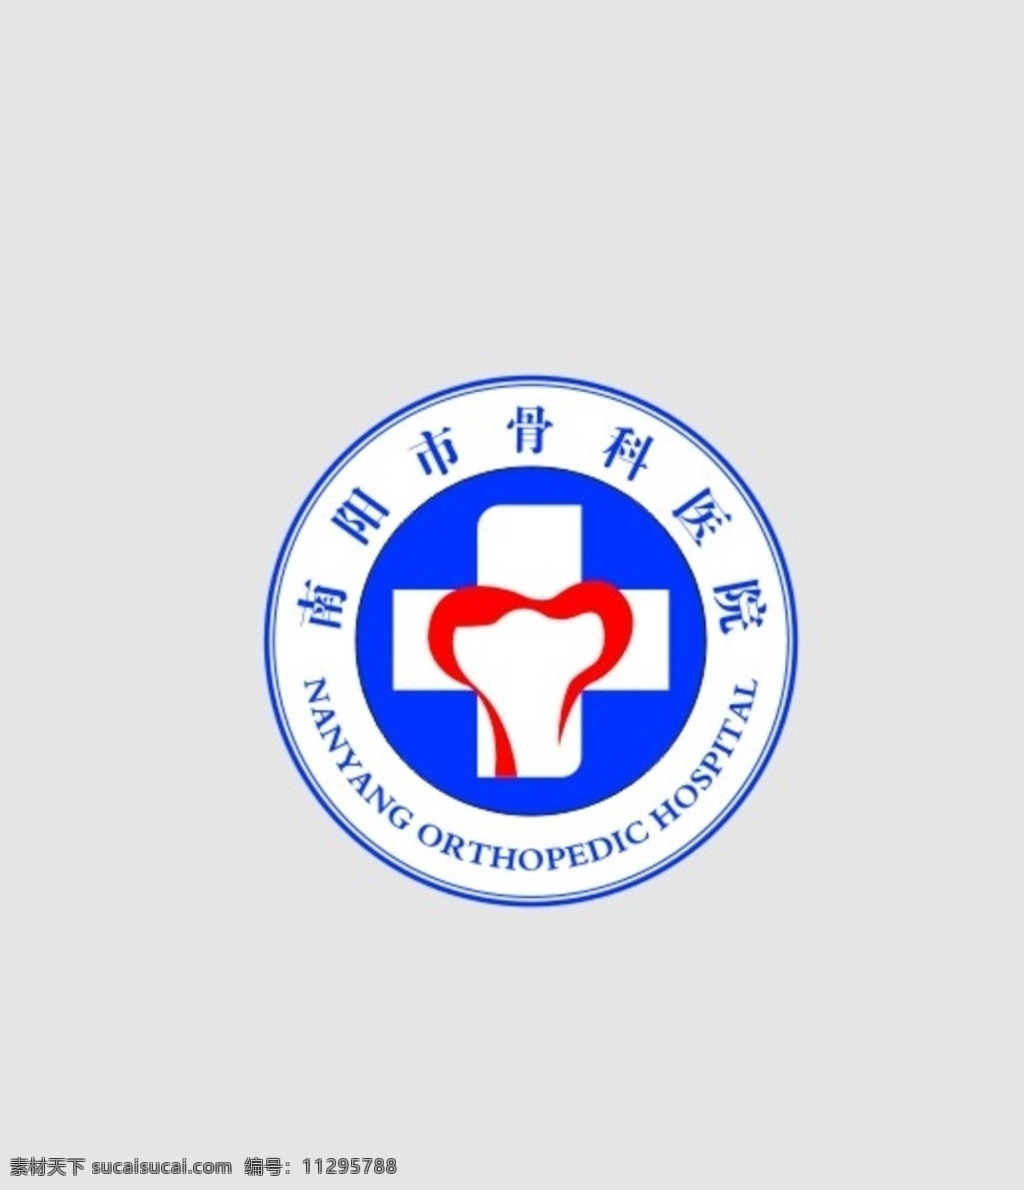 南阳骨科医院 南阳 骨科医院 医院 标志 logo 标志图标 公共标识标志